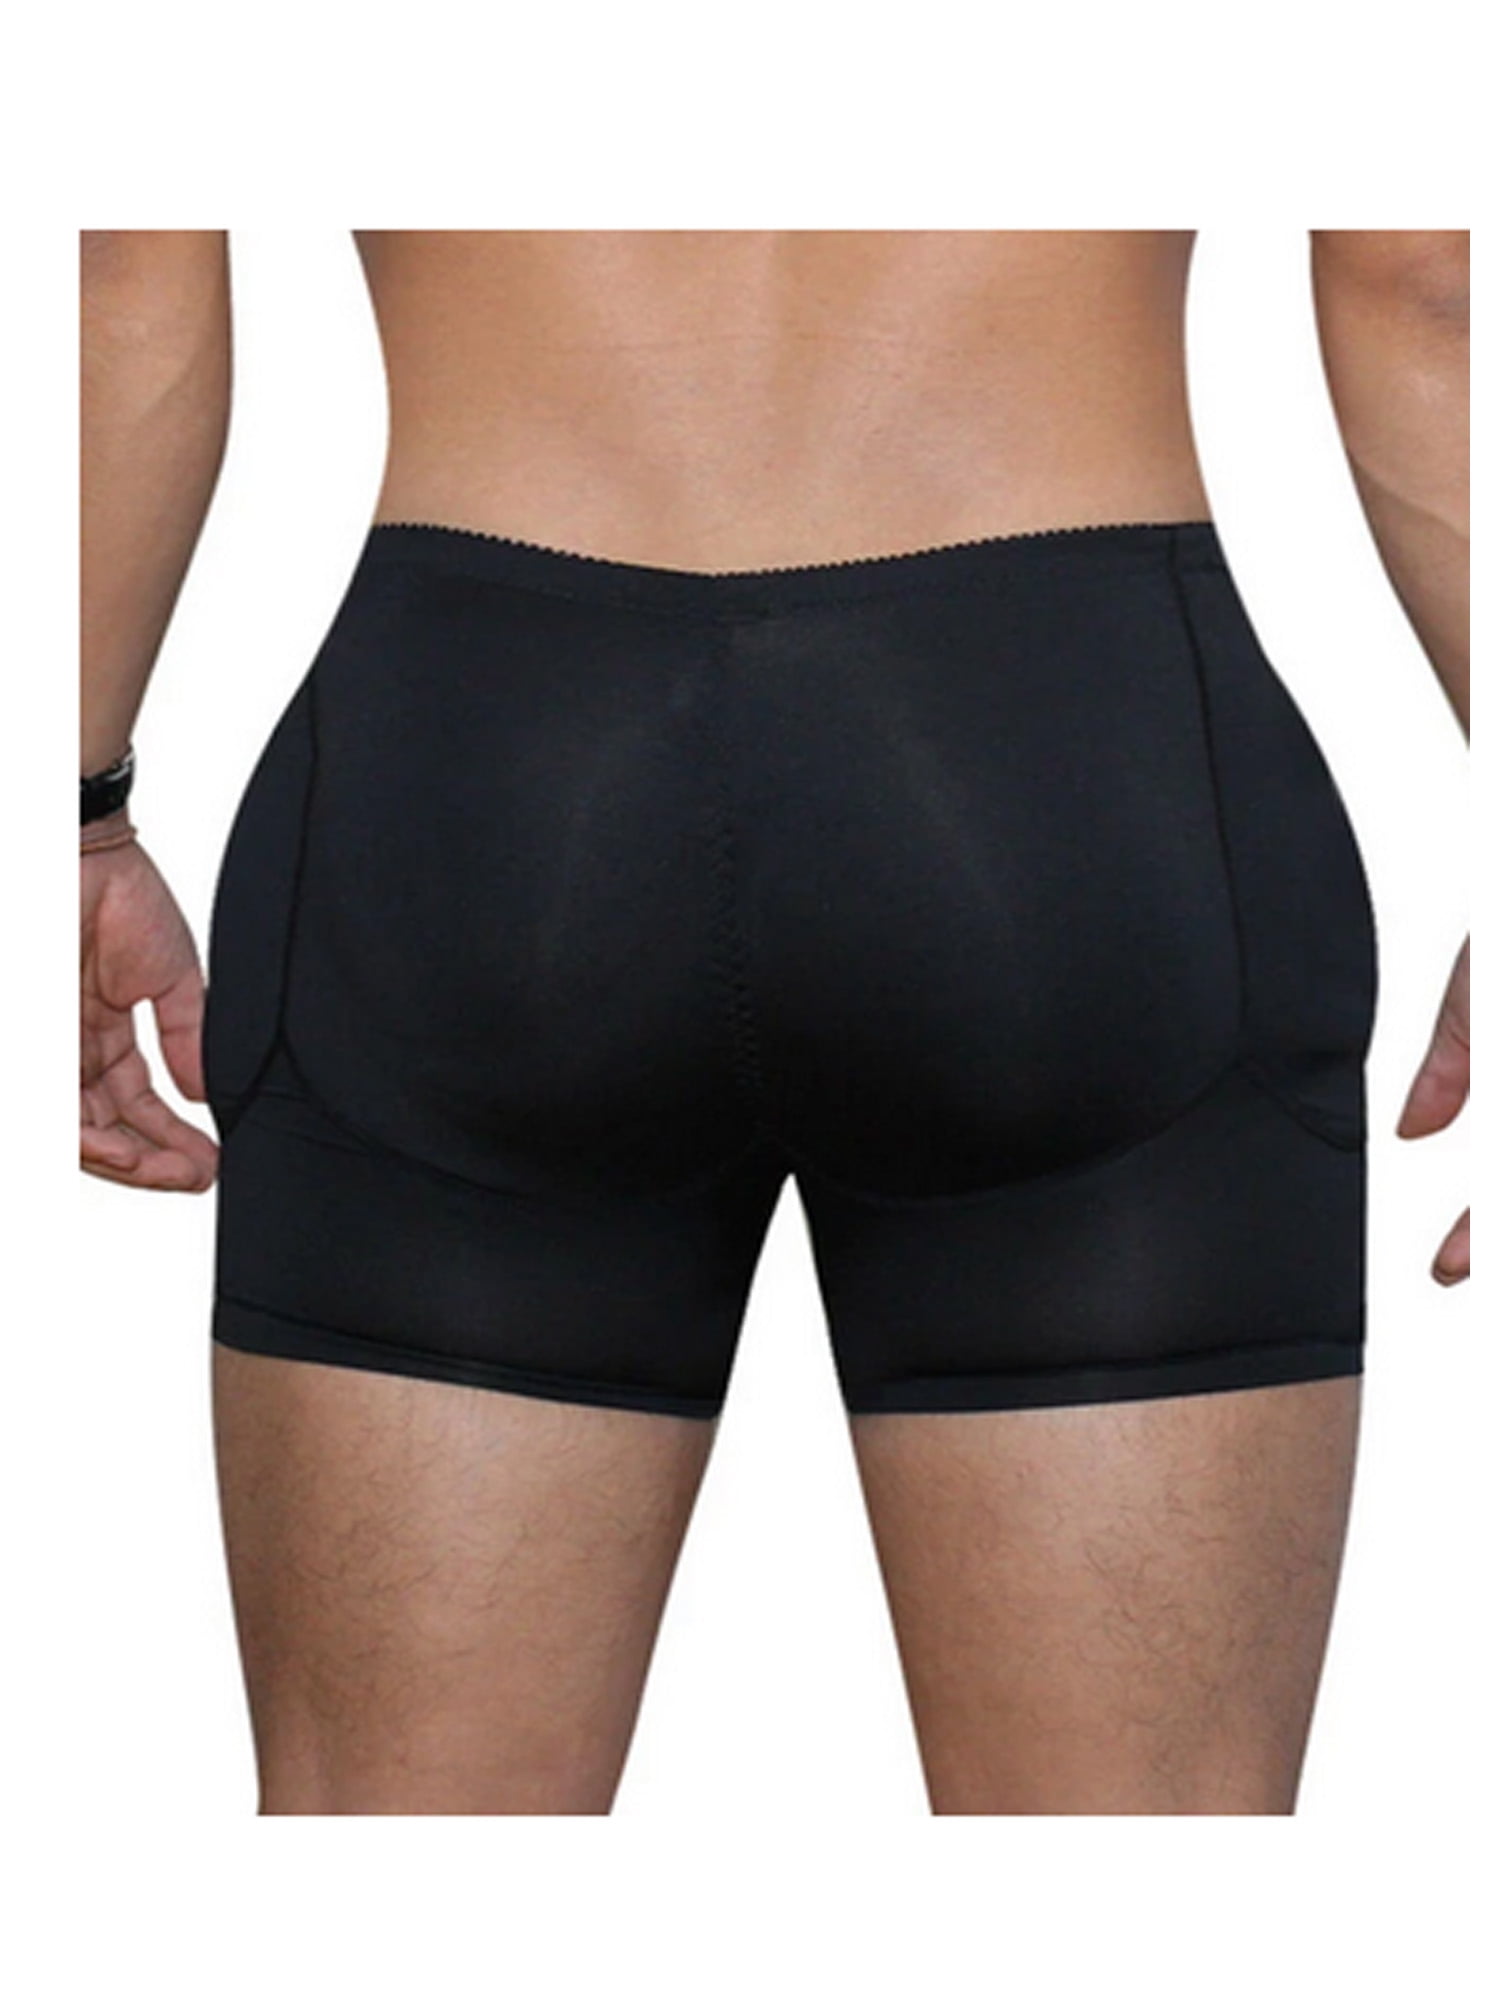 Men's padded Butt Lifter Control Panties Waist Trainer Corsets Slimming  Shaper Pads Enhancement Underwear men Butt Lift Shaper